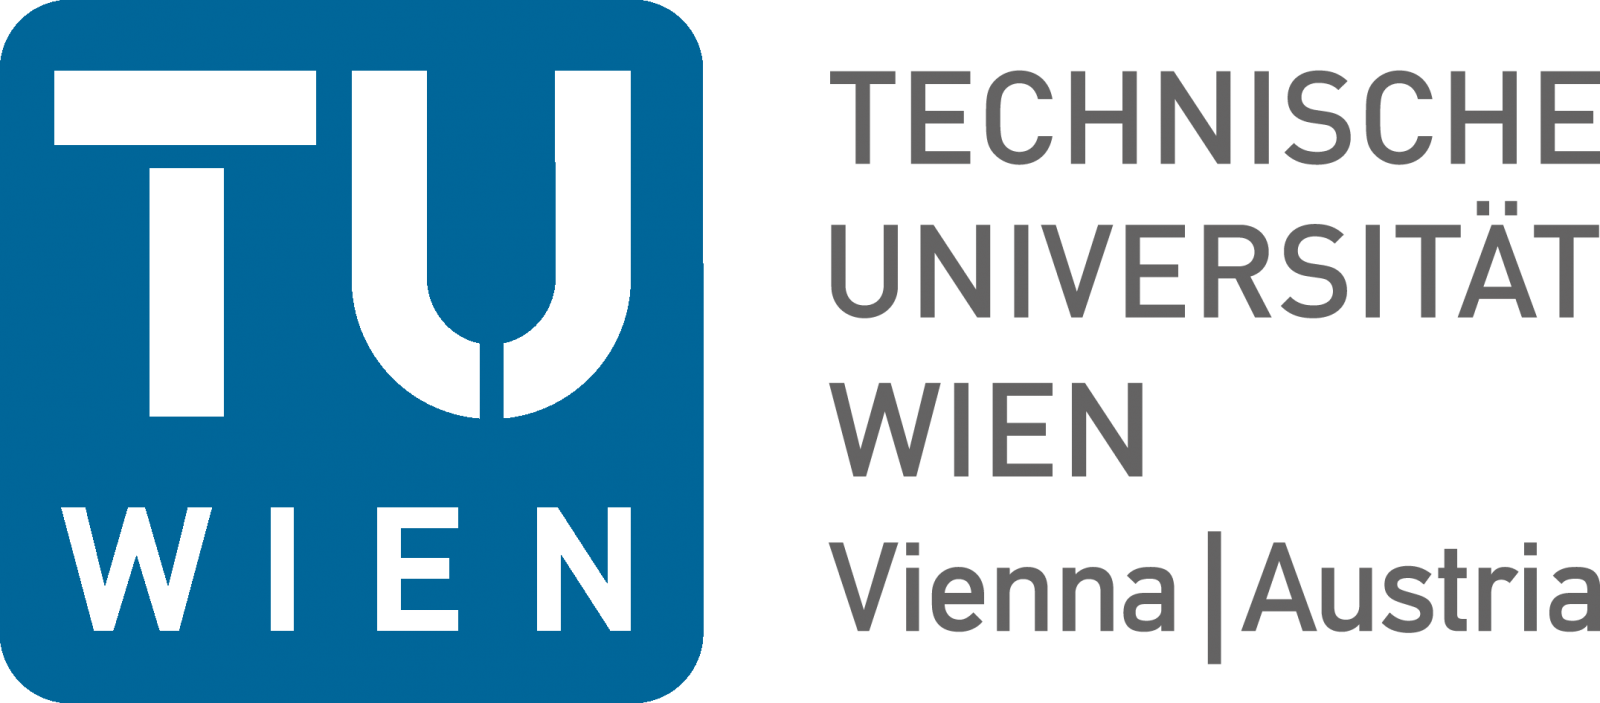 Венский технический университет (TU Wien)